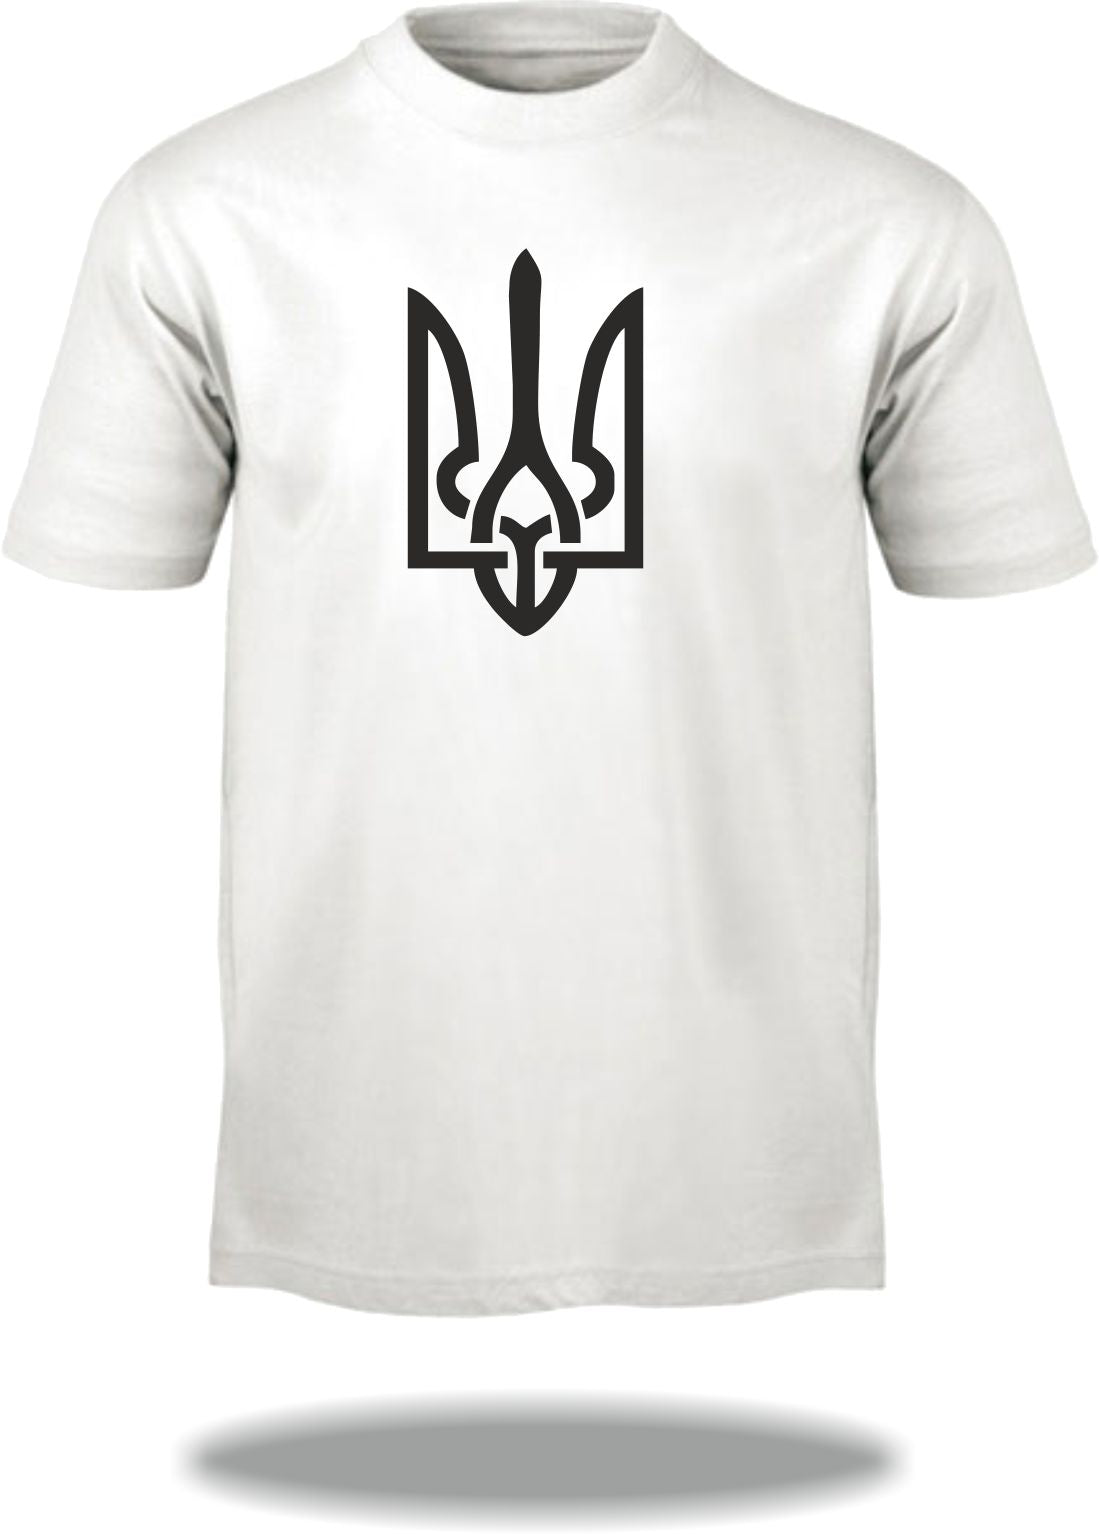 T-Shirt Wappen Ukraine / Ukraine Coat of Arms